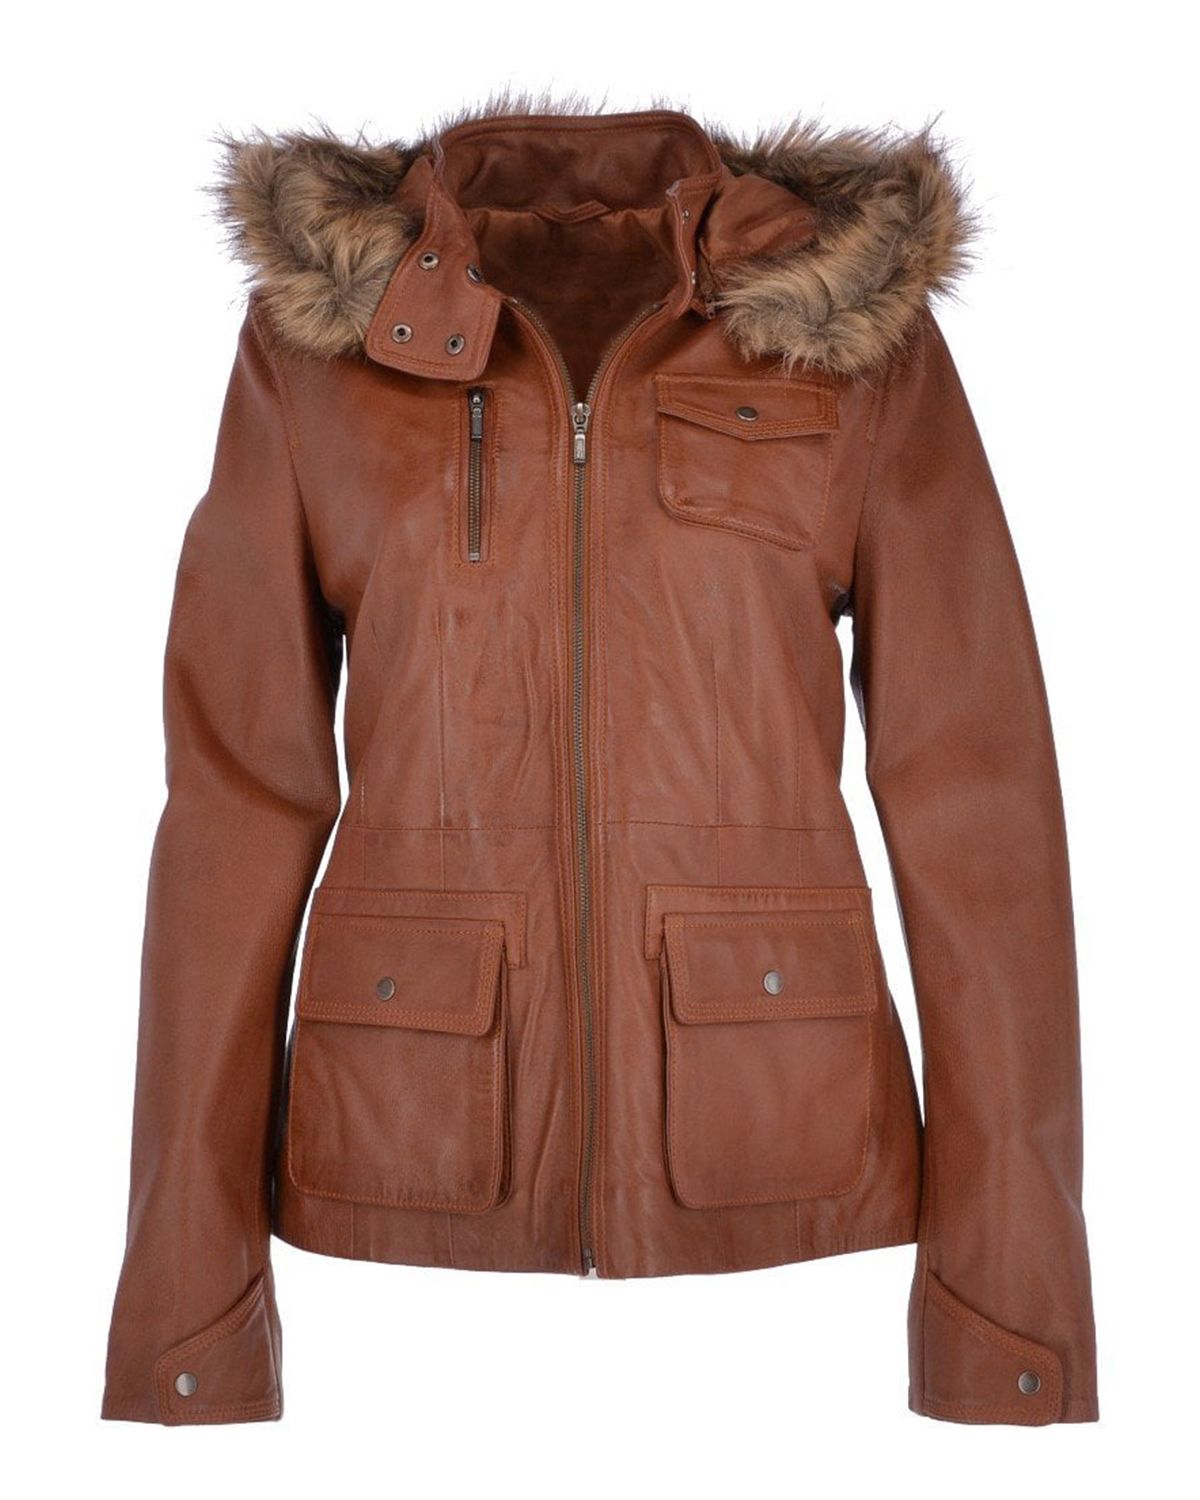 Women's Brown Hooded Leather Biker jacket